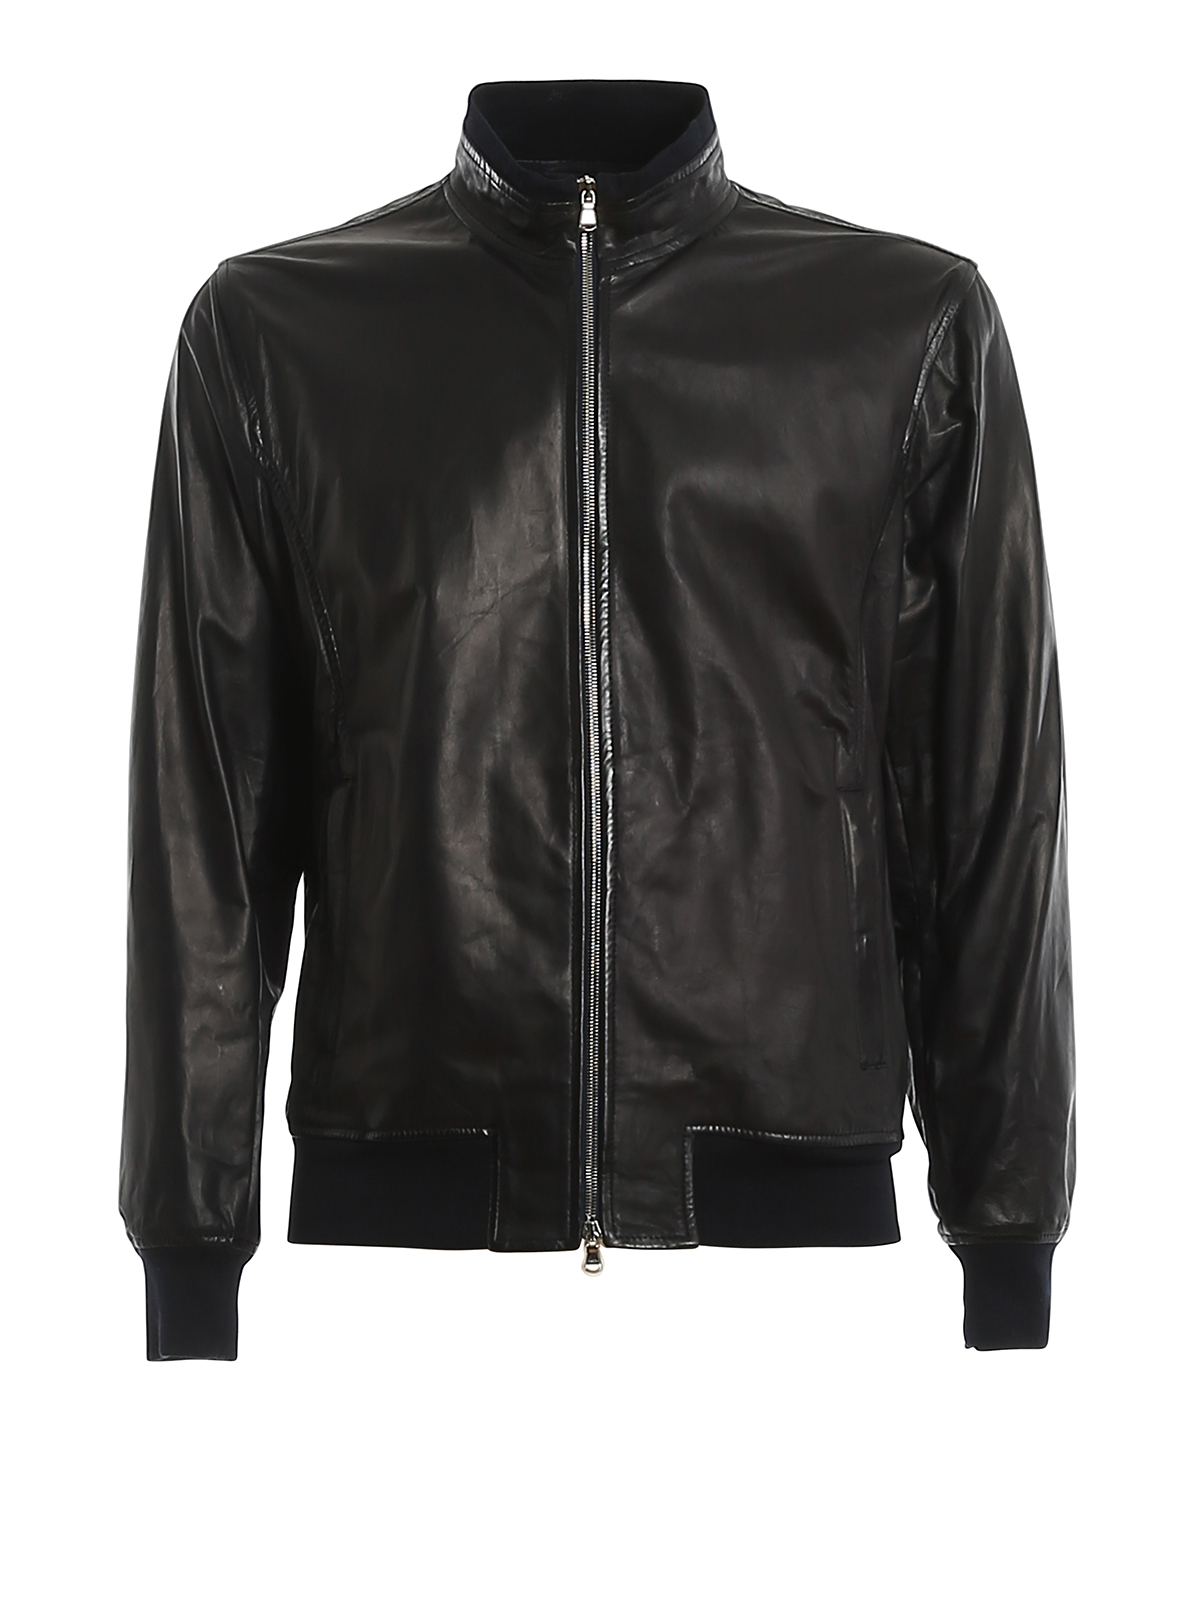 Leather jacket Barba - Ribbed edges leather jacket - RENE205003